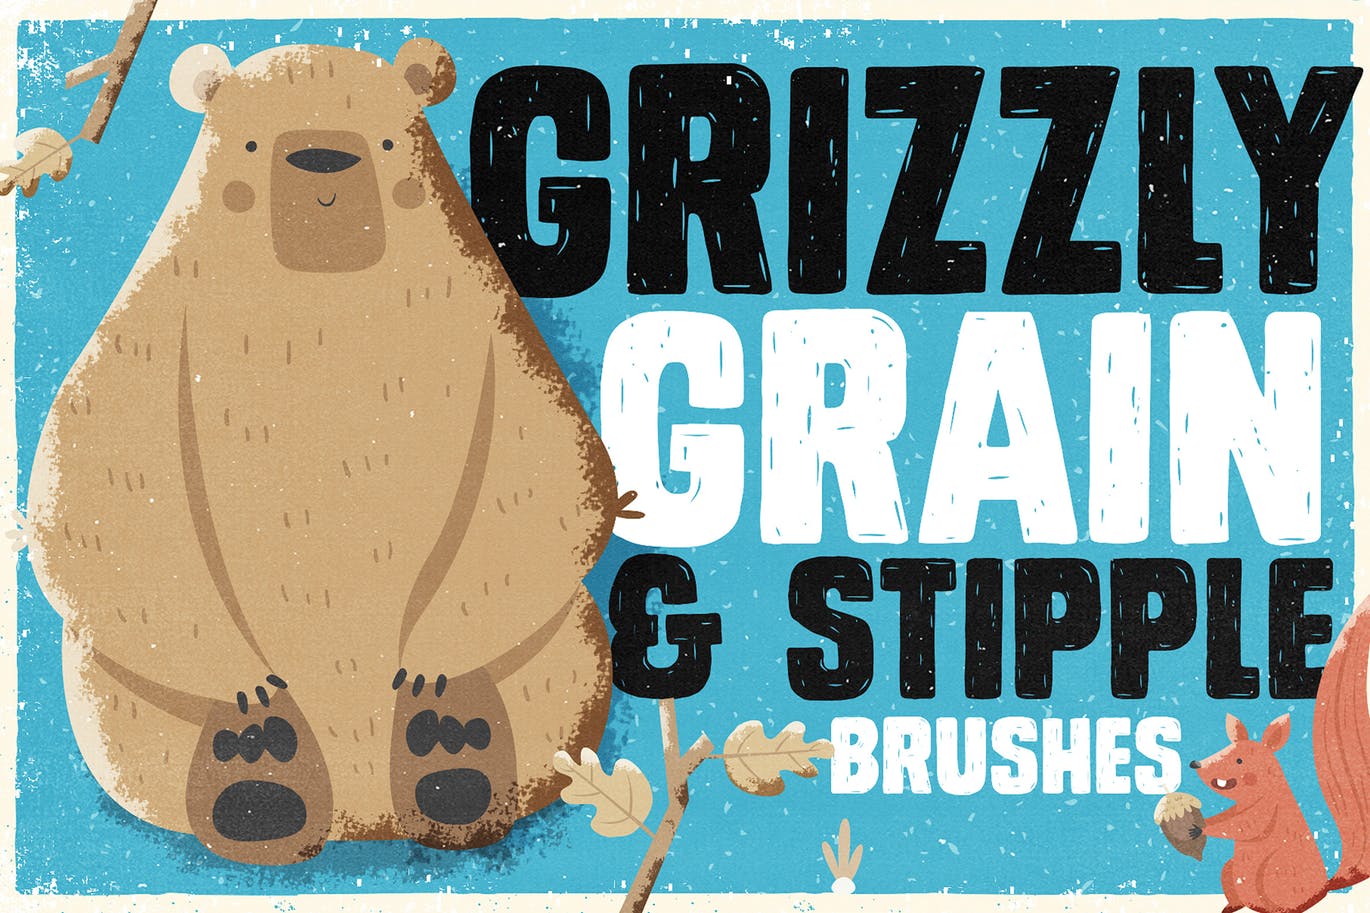 手绘设计师必备-流行的仿旧阴影效果点画创作PS笔刷蚂蚁素材精选 Grizzly Grain & Stipple Shader Brushes插图